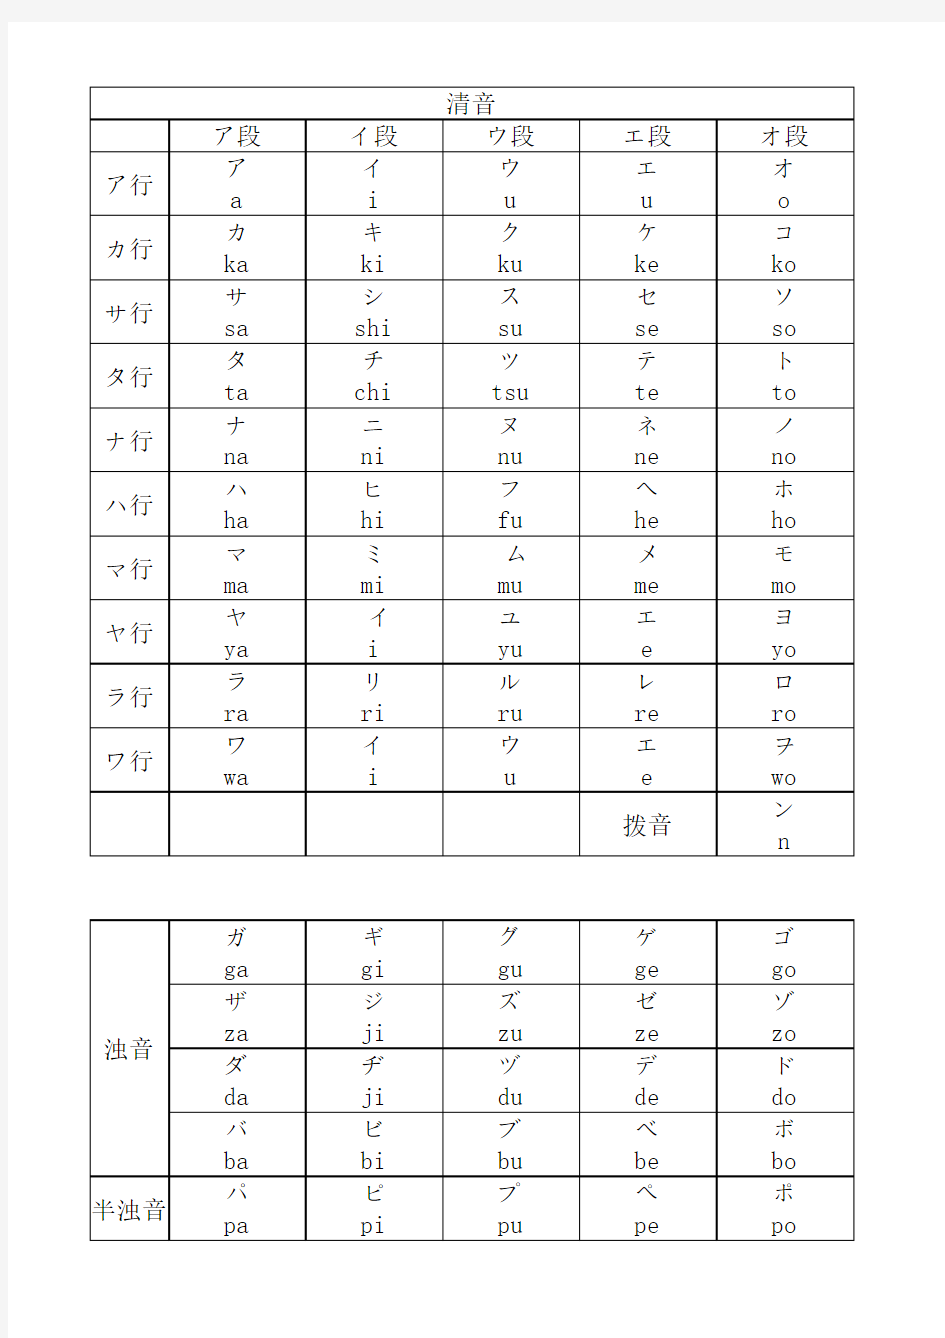 日语五十音图(包括浊音,拗音)